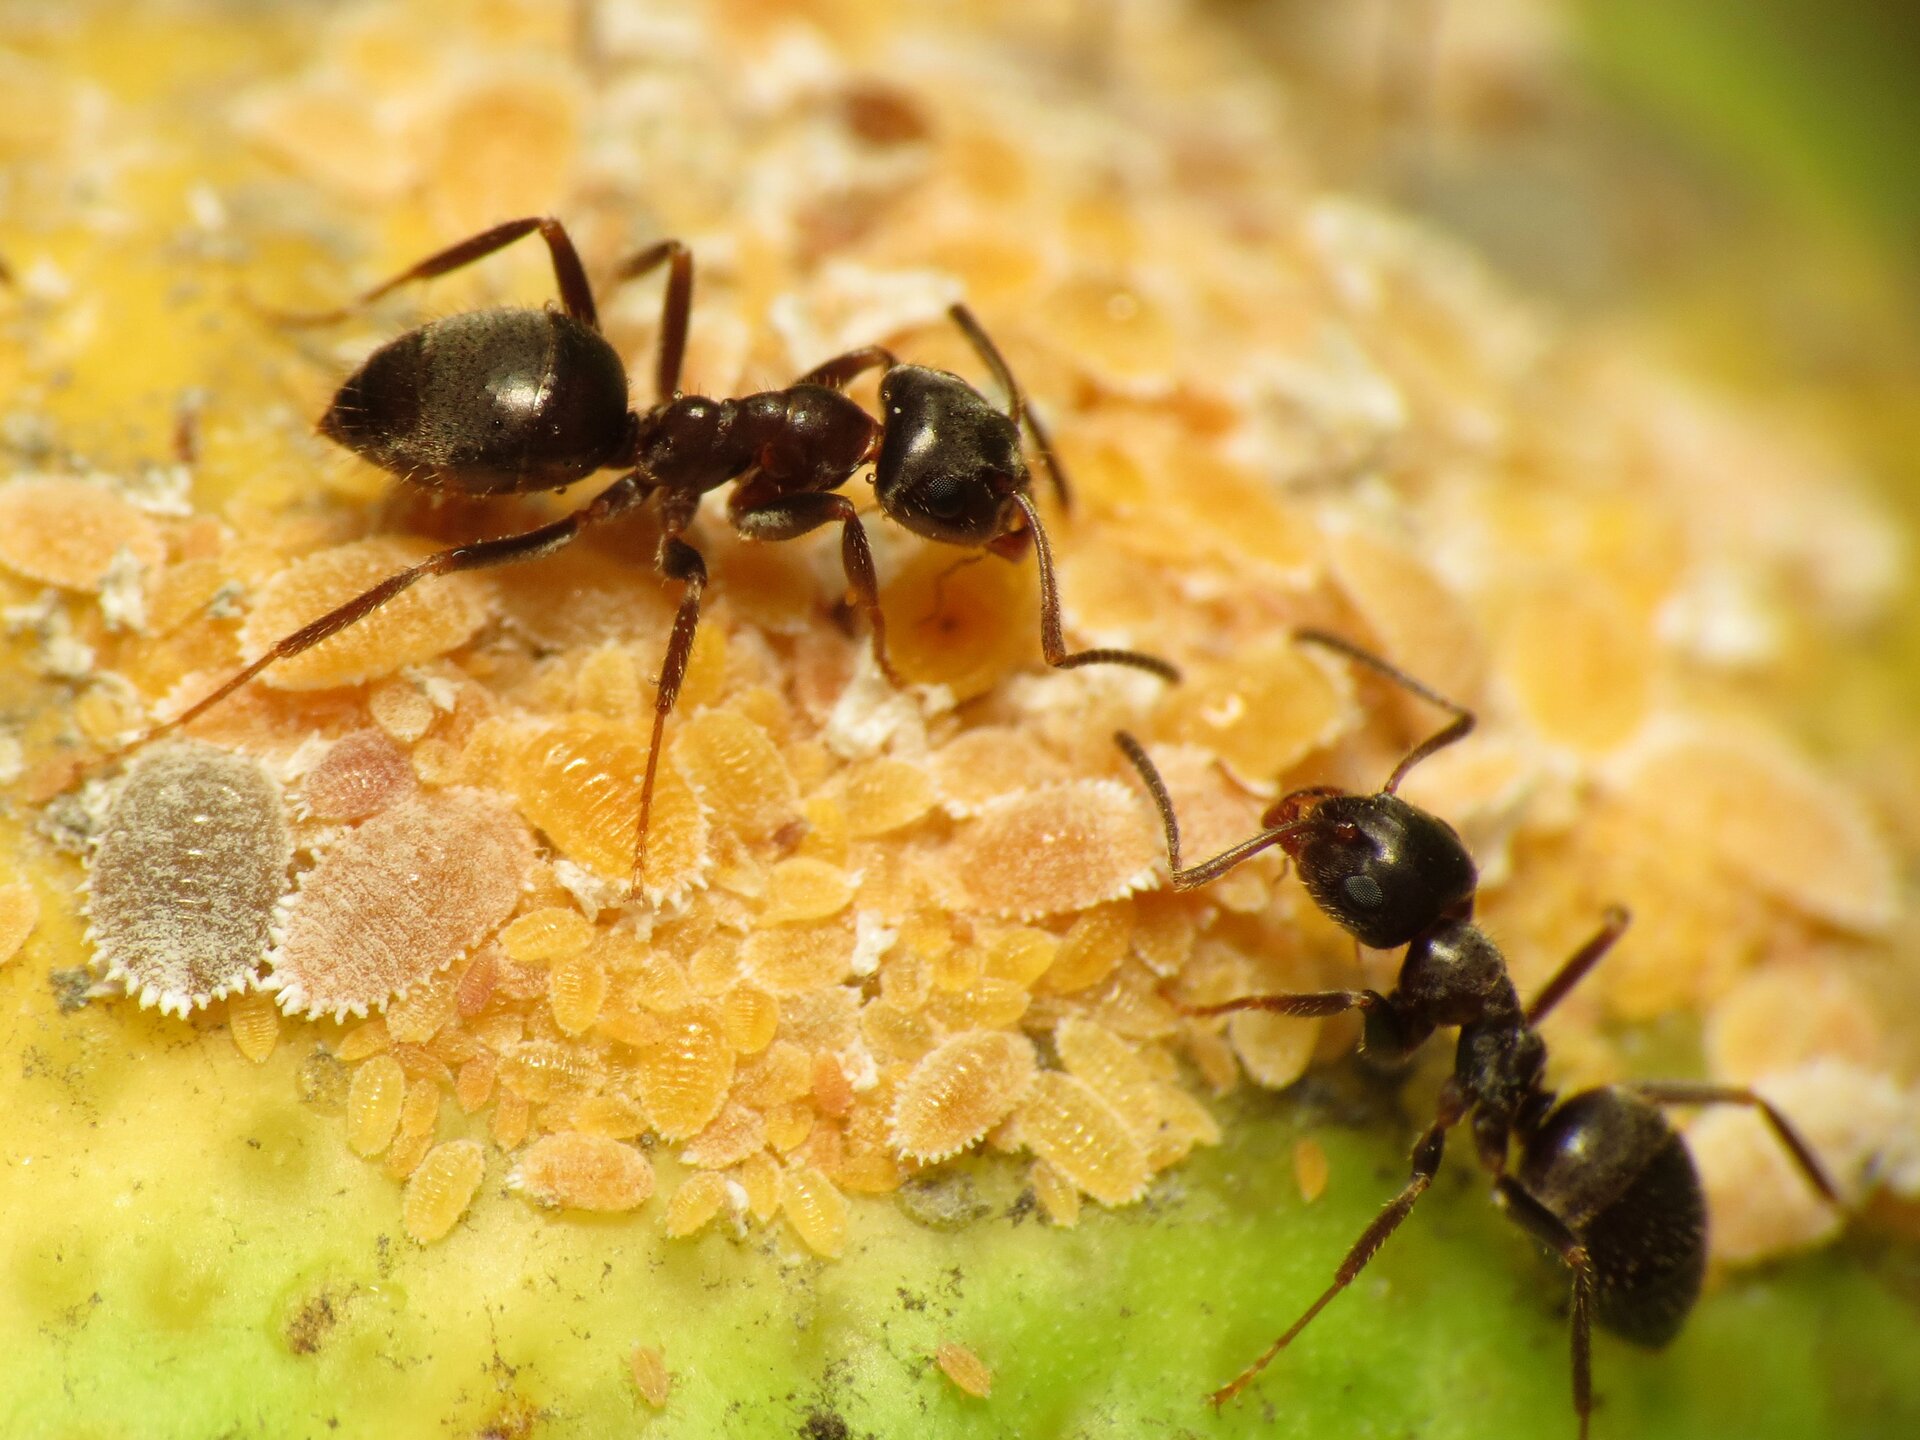 Fotografia dwóch mrówek. Mrówki stoją ustawione głowami do siebie. Ciała owadów są czarne. Głowa jest duża, tułów krótki, ale długi, za nim znajduje się odwłok, większy od głowy. Mrówki opierają się na cienkich odnóżach.